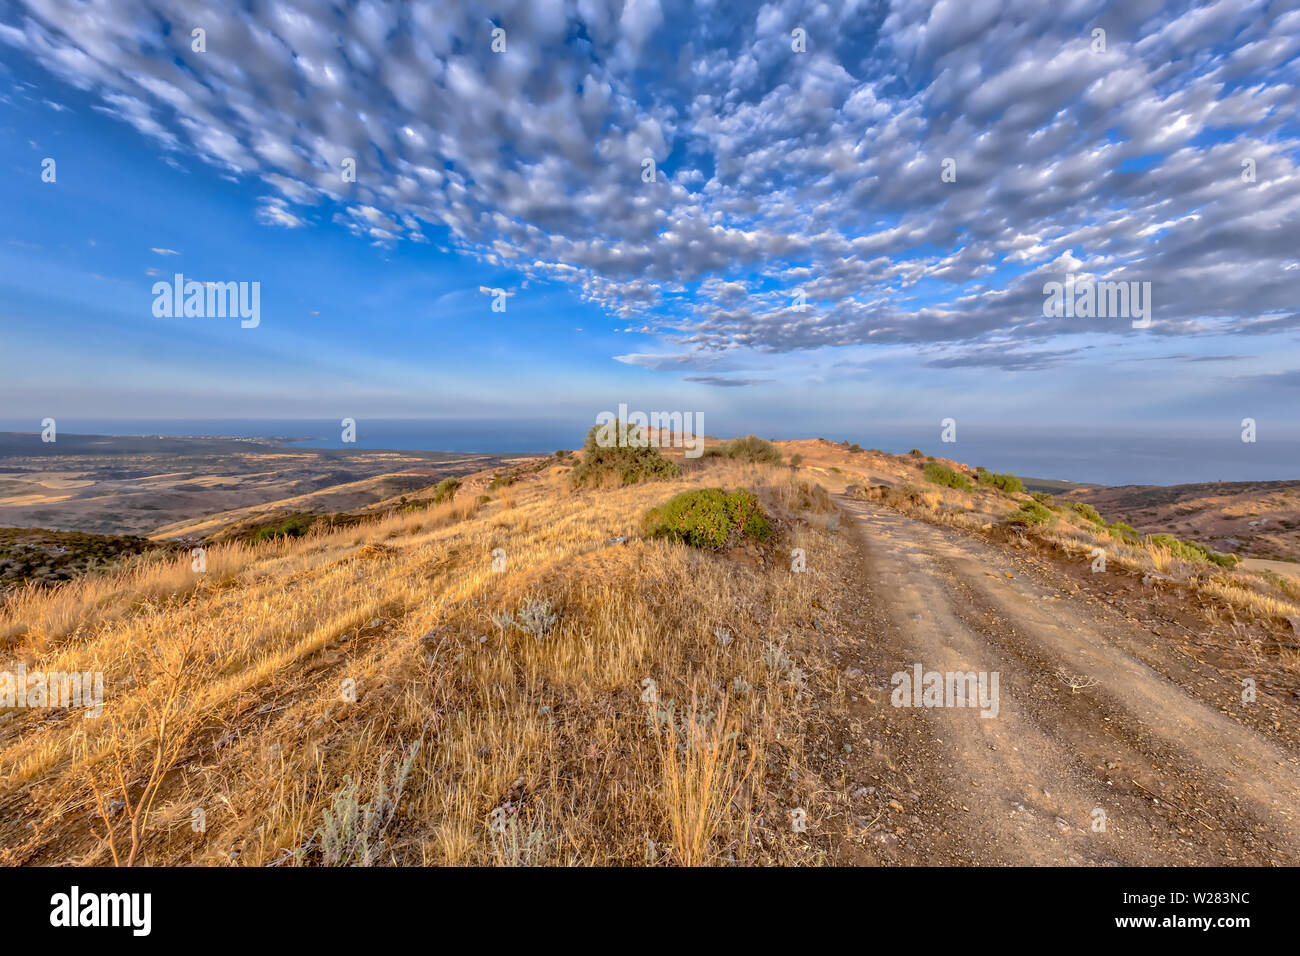 Strada rocciosa sulla collina attraverso il paesaggio mediterraneo sull'isola di Cipro con l'oceano sullo sfondo. Il caldo semi-arido clima di tipo BSh ha corr Foto Stock